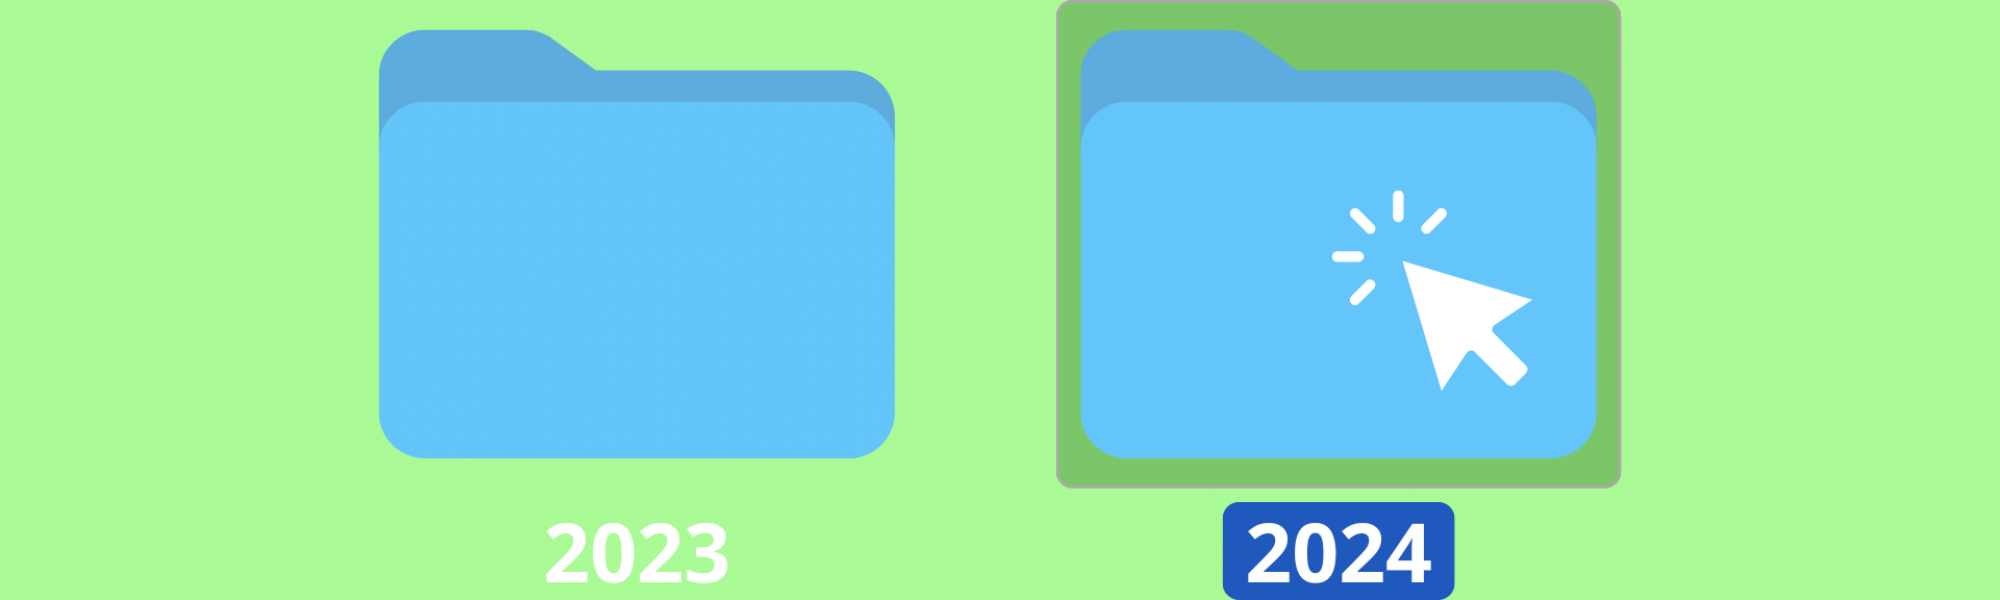 A desktop mouse clicking on a blue desktop file labeled "2024."